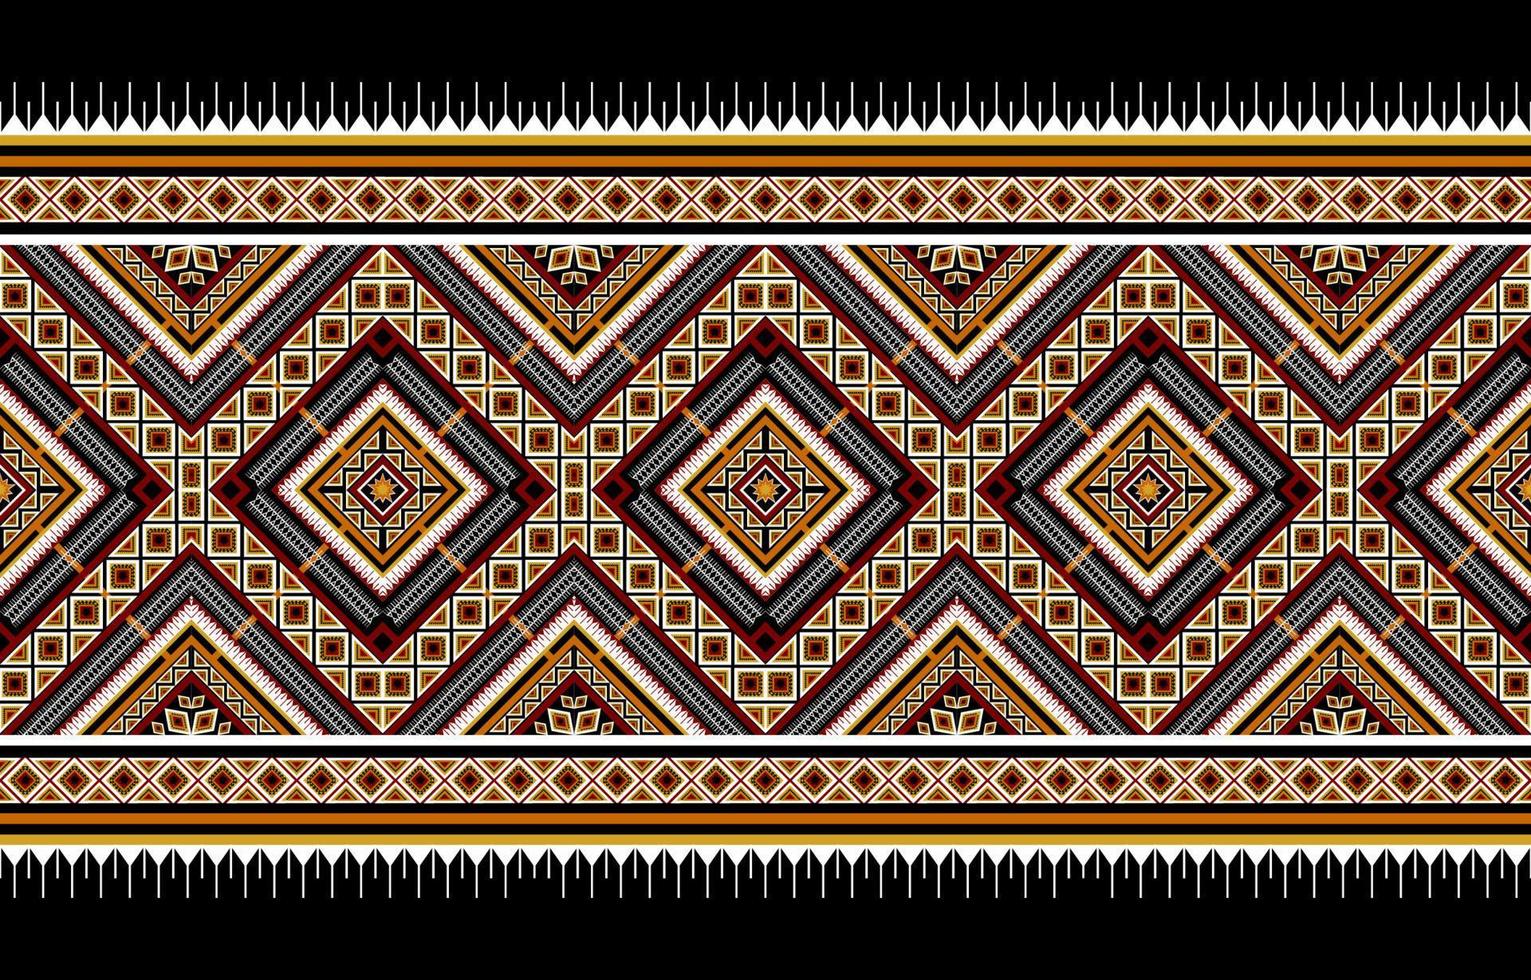 motif ethnique géométrique abstrait traditionnel. style américain, mexicain. conception pour le fond, l'illustration, le papier peint, le tissu, le batik, le tapis, l'habillement, la broderie vecteur